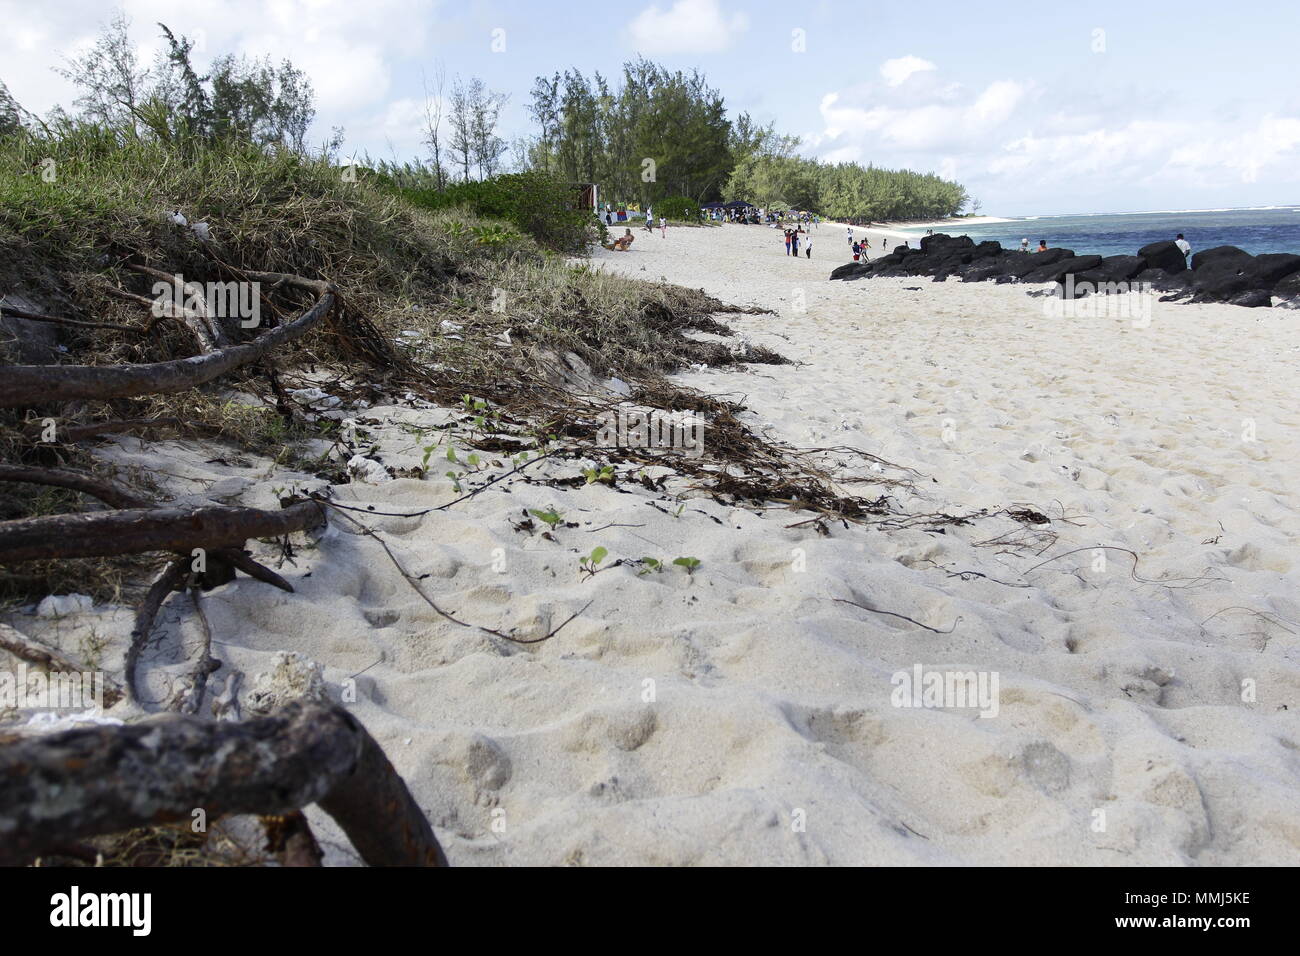 L'île Maurice n'abrite superbes uniquement pas des plages de sable bordées aletas de cocotiers, dotées d'un lagon idyllique où l'on peut nager sans crain Foto de stock